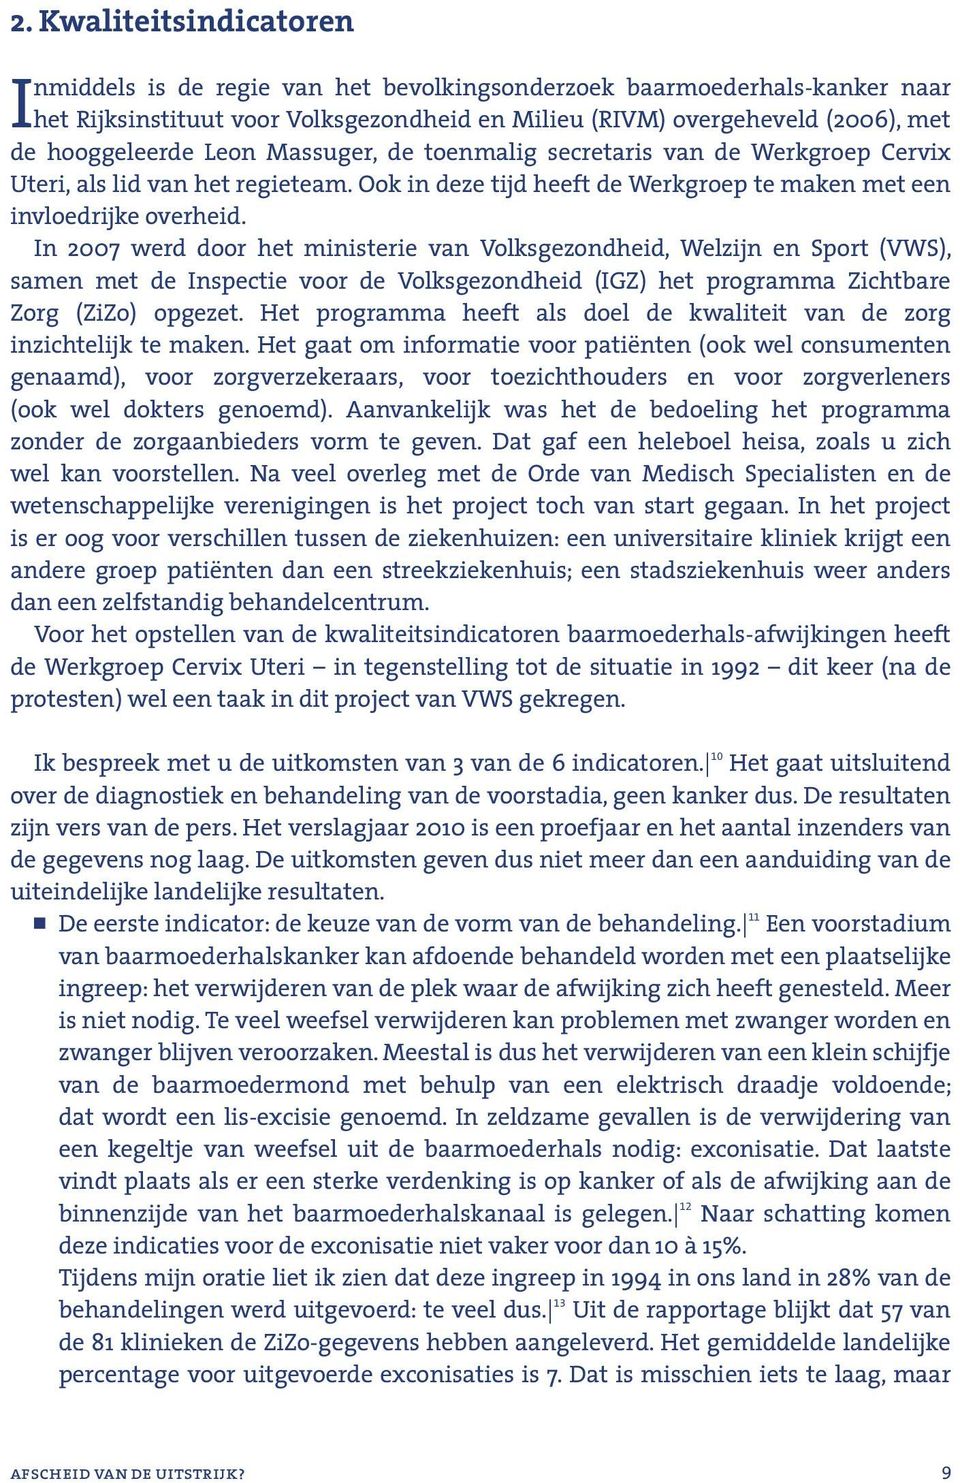 In 2007 werd door het ministerie van Volksgezondheid, Welzijn en Sport (VWS), samen met de Inspectie voor de Volksgezondheid (IGZ) het programma Zichtbare Zorg (ZiZo) opgezet.